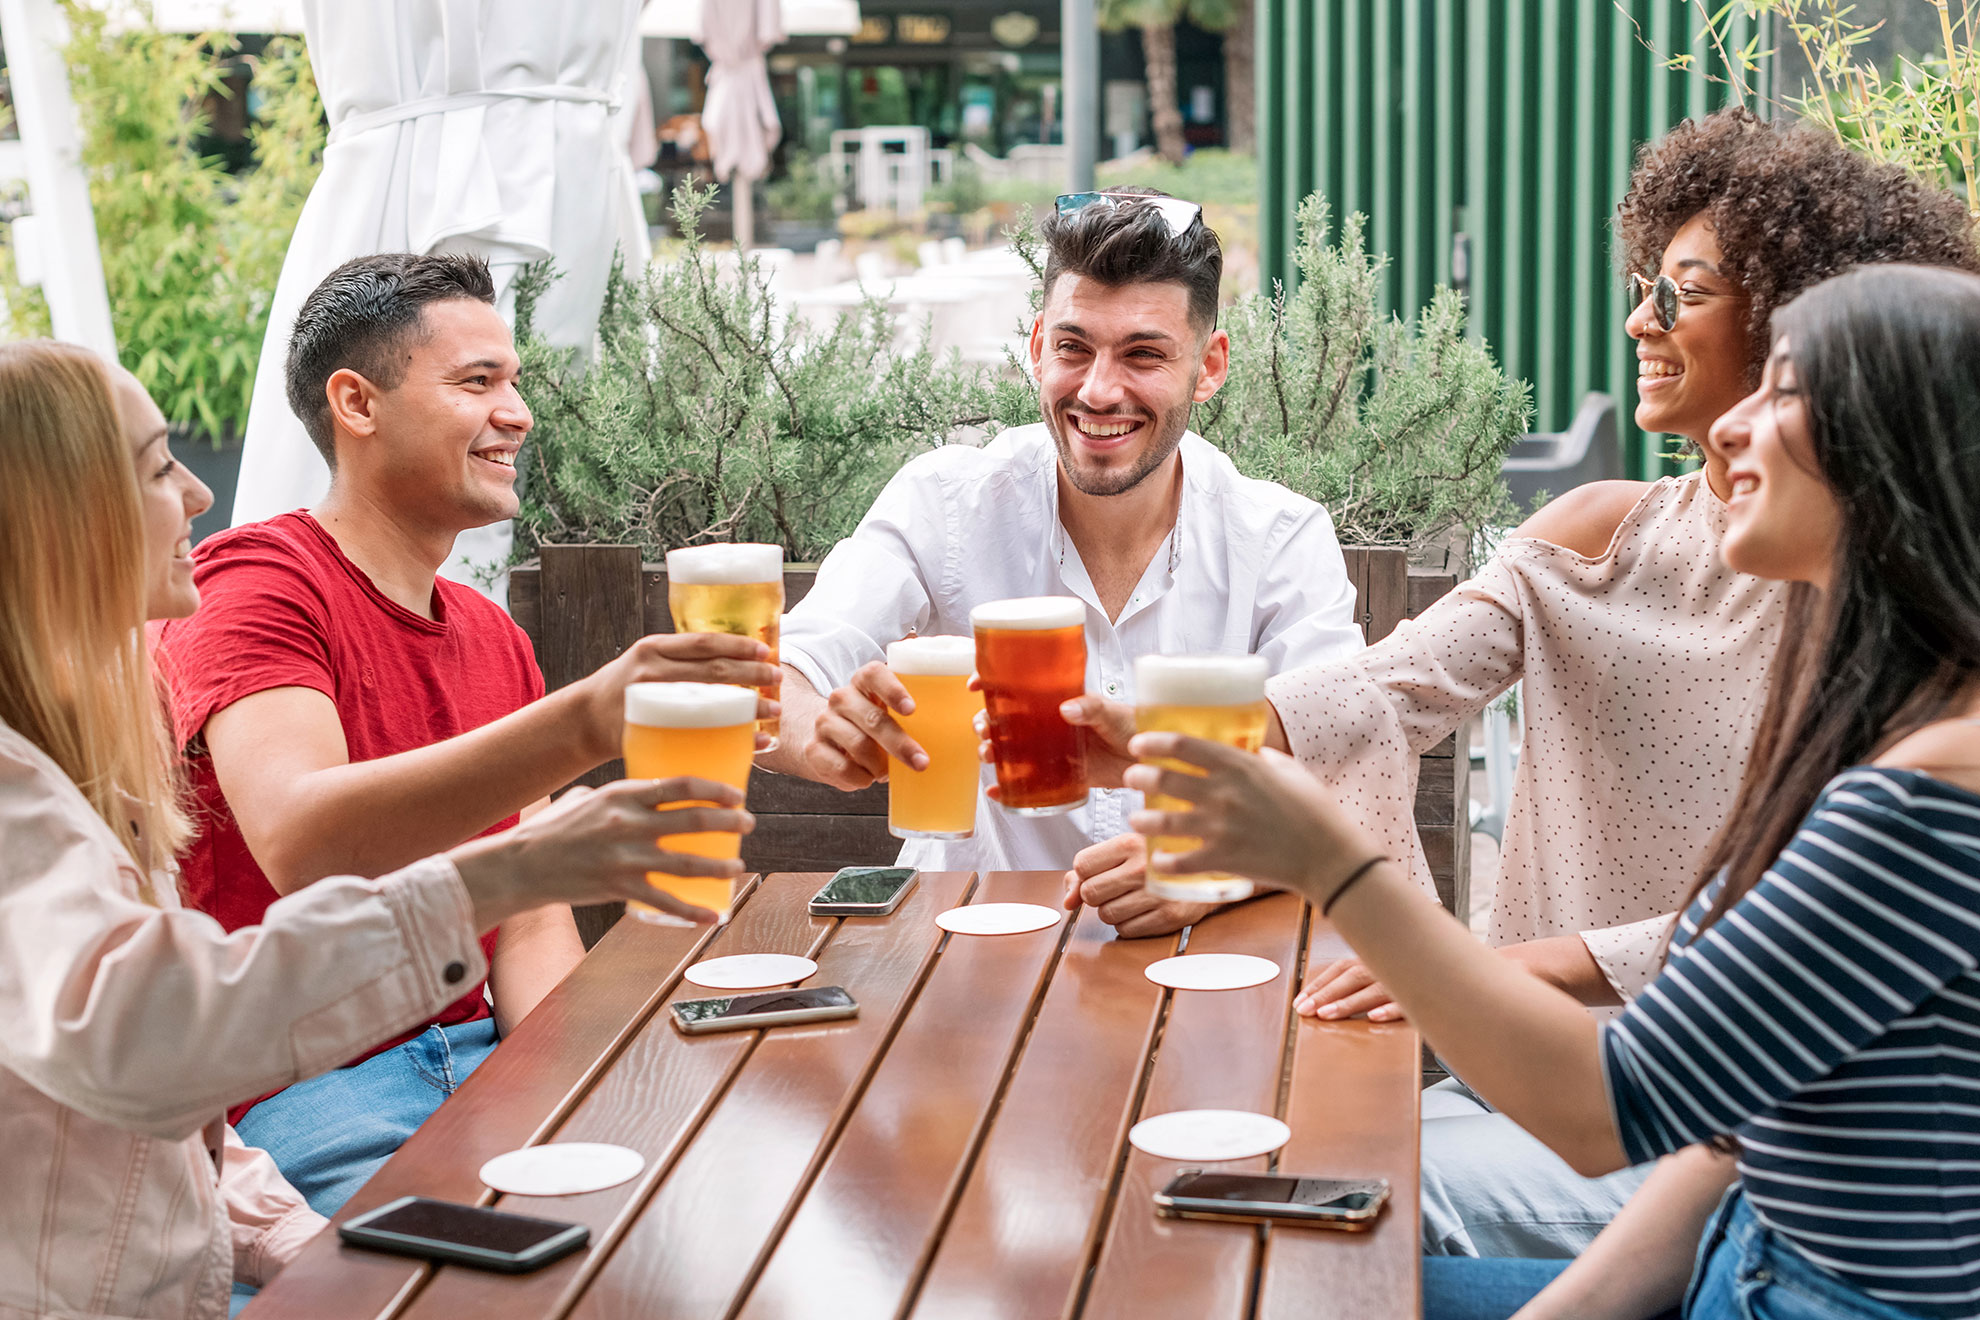 Junge Menschen stoßen mit Bier an: In Maßen konsumiert sind alkoholische Getränke ein Genussmittel.